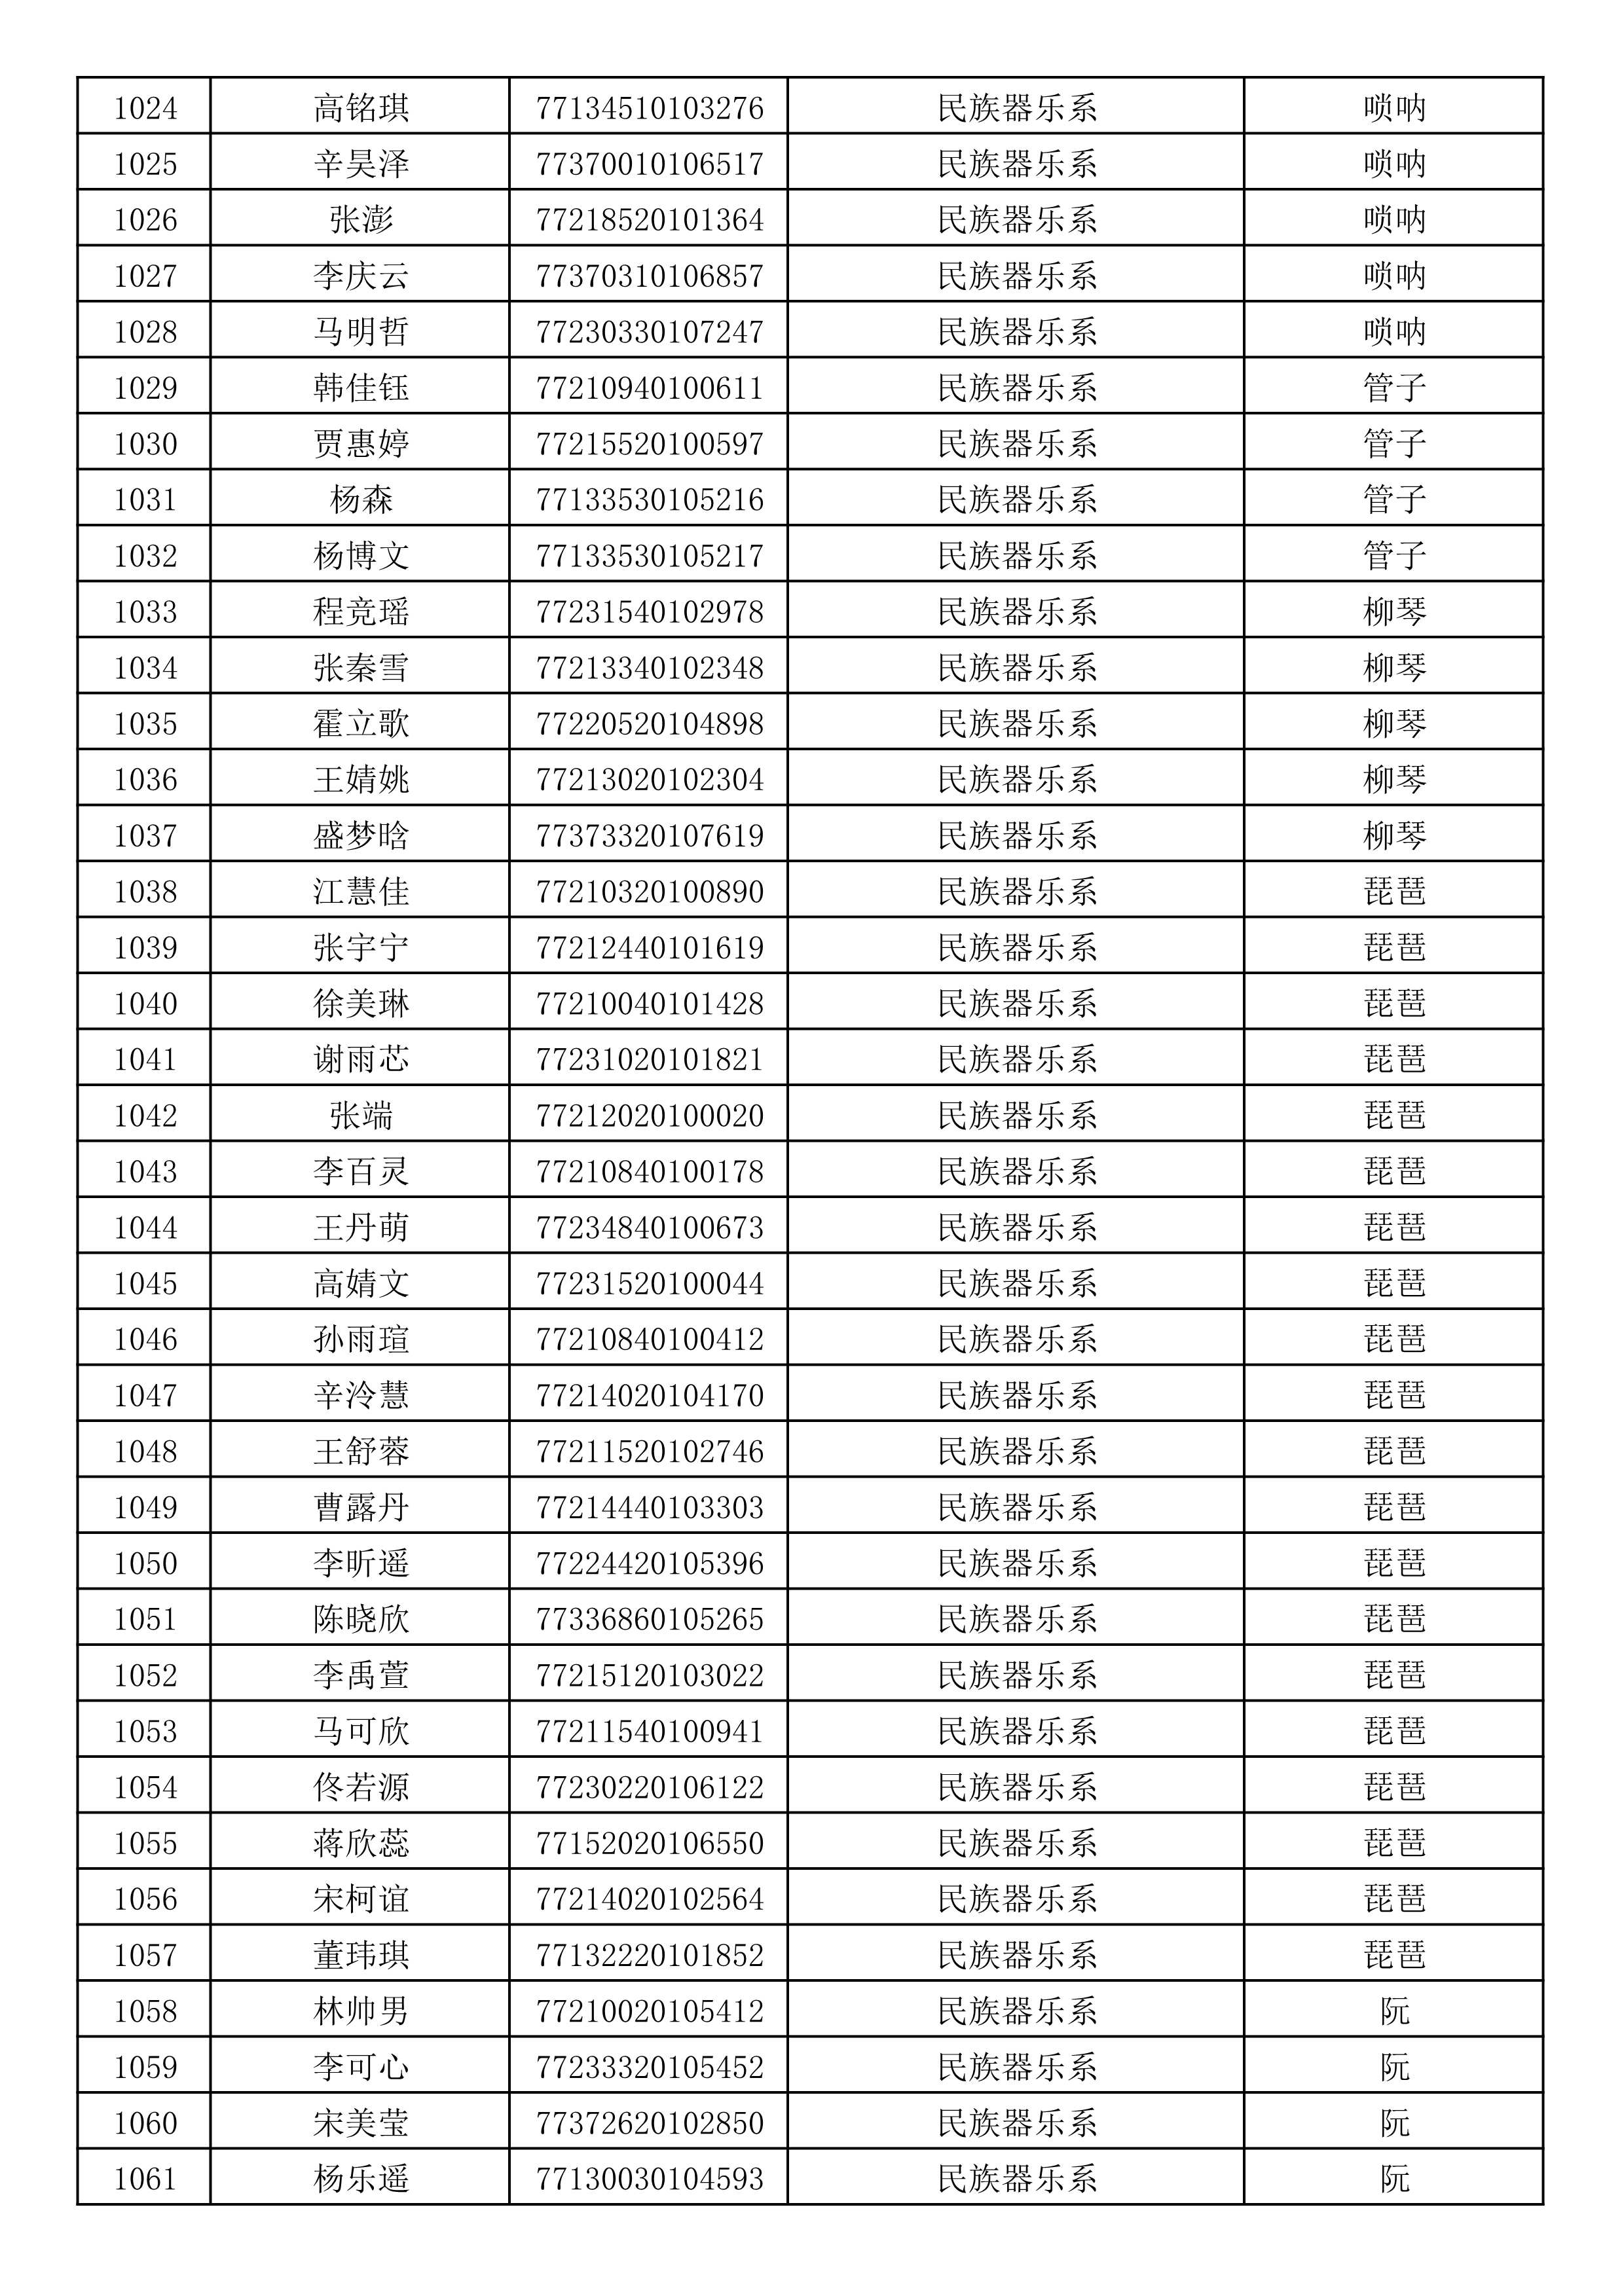 沈阳音乐学院2019年本科招生考试初试合格名单_28.jpg